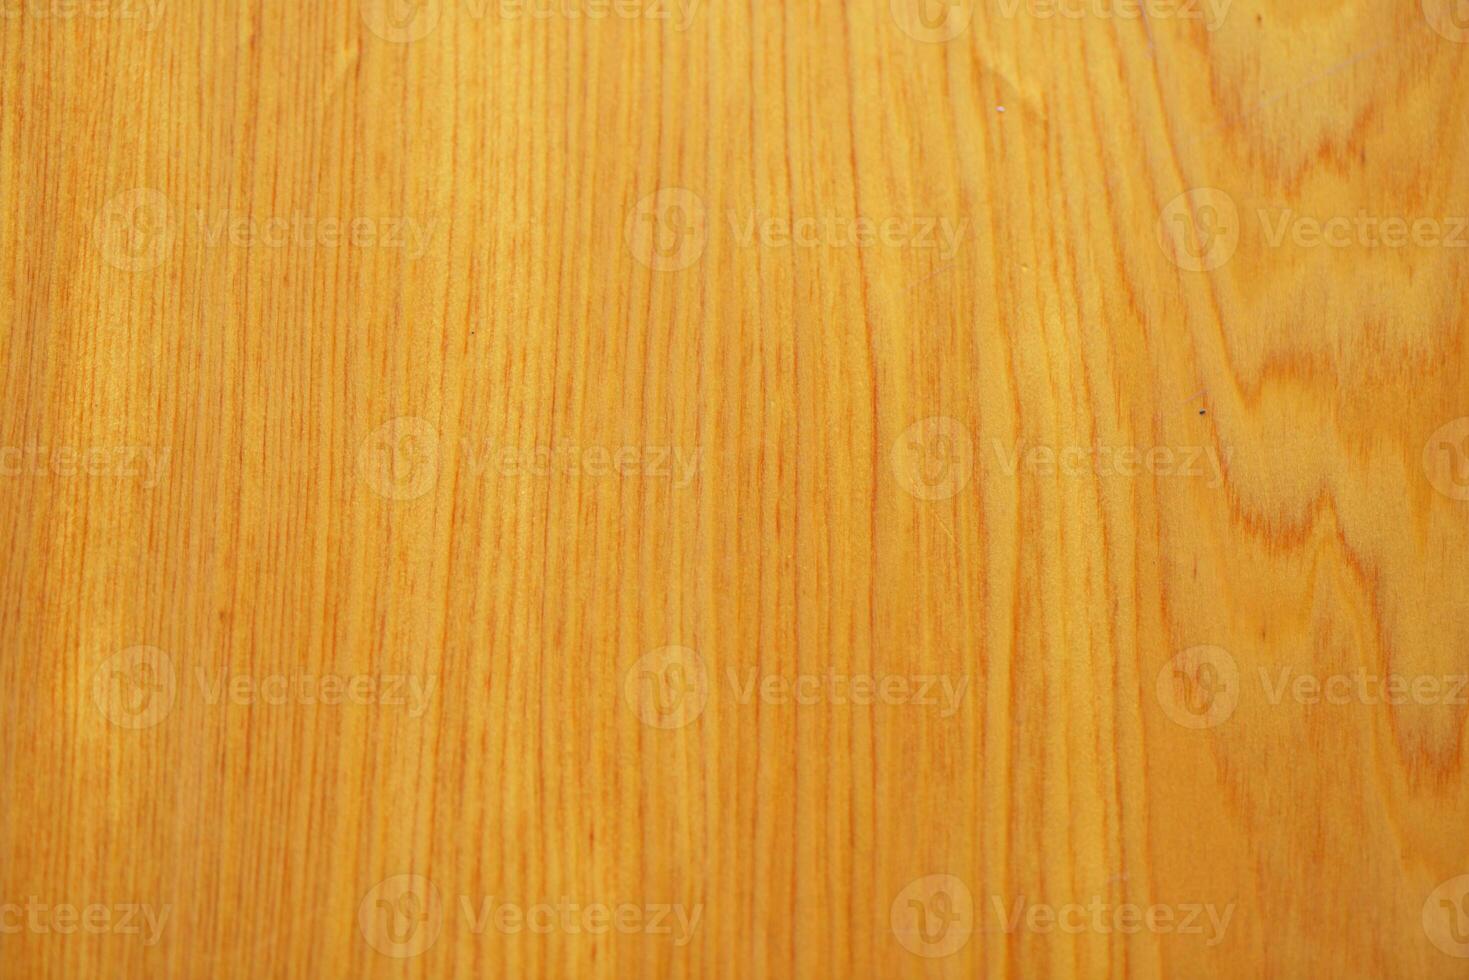 kleurrijk houten textuur. rustiek driedimensionaal hout structuur achtergrond. houten gevel patroon achtergrond textuur. foto